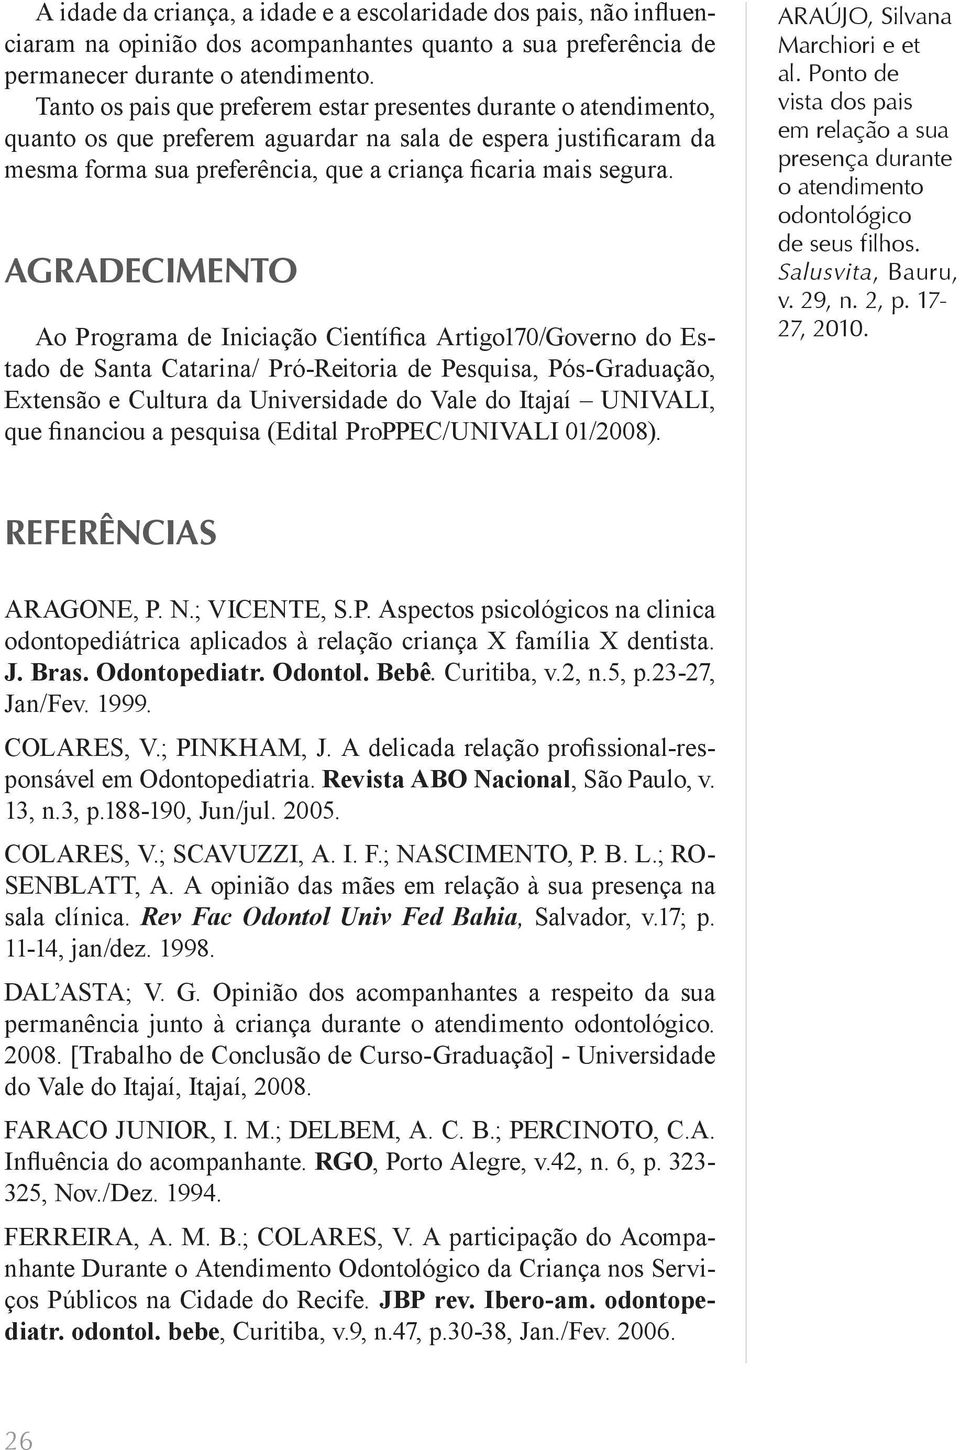 Agradecimento Ao Programa de Iniciação Científica Artigo170/Governo do Estado de Santa Catarina/ Pró-Reitoria de Pesquisa, Pós-Graduação, Extensão e Cultura da Universidade do Vale do Itajaí UNIVALI,